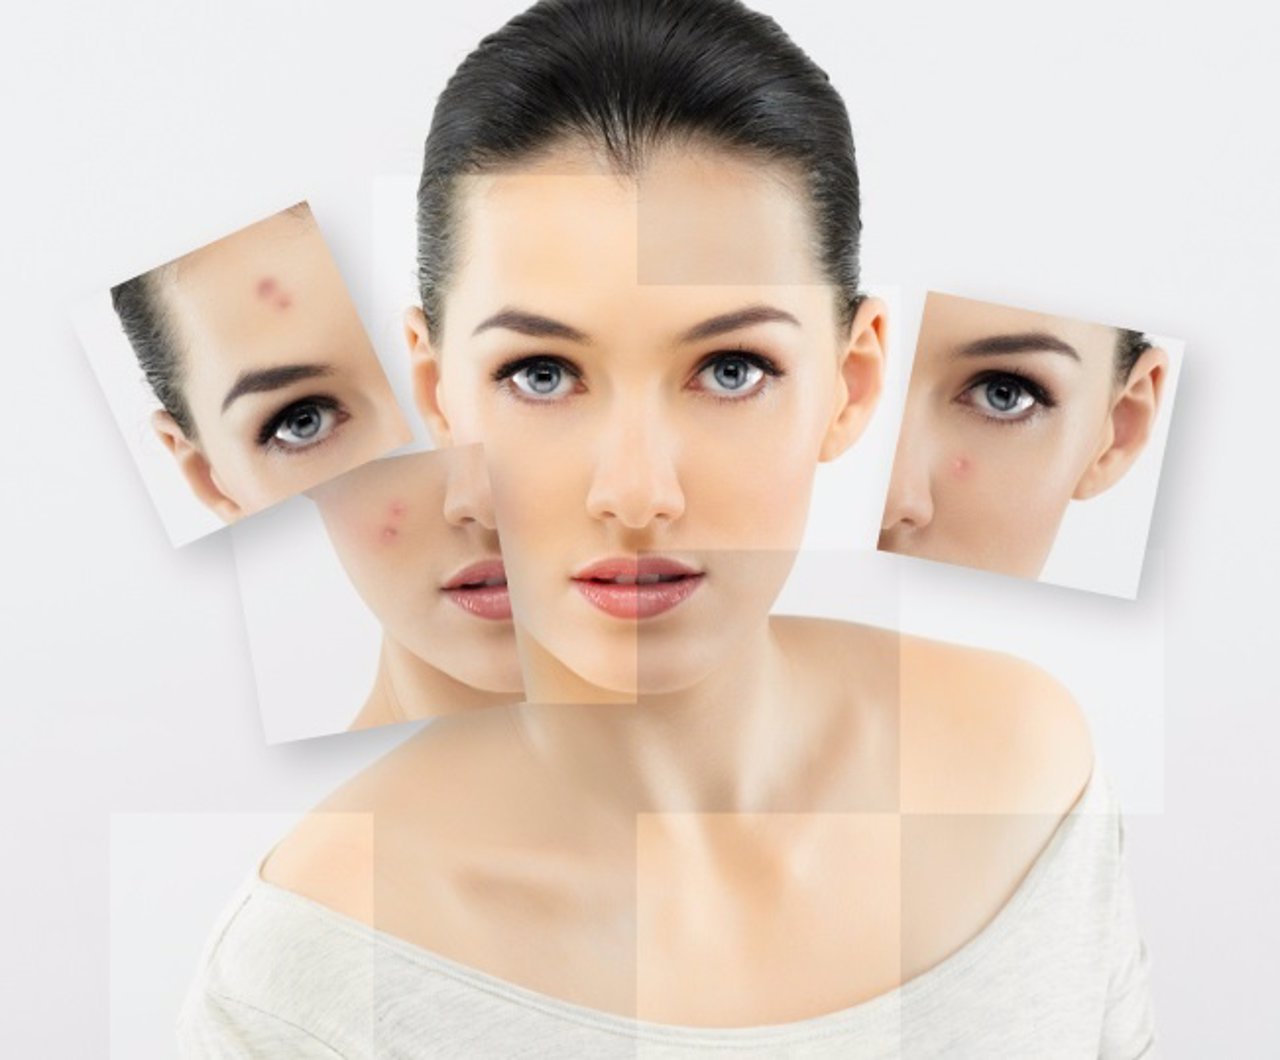 Las causas del acné adulto

